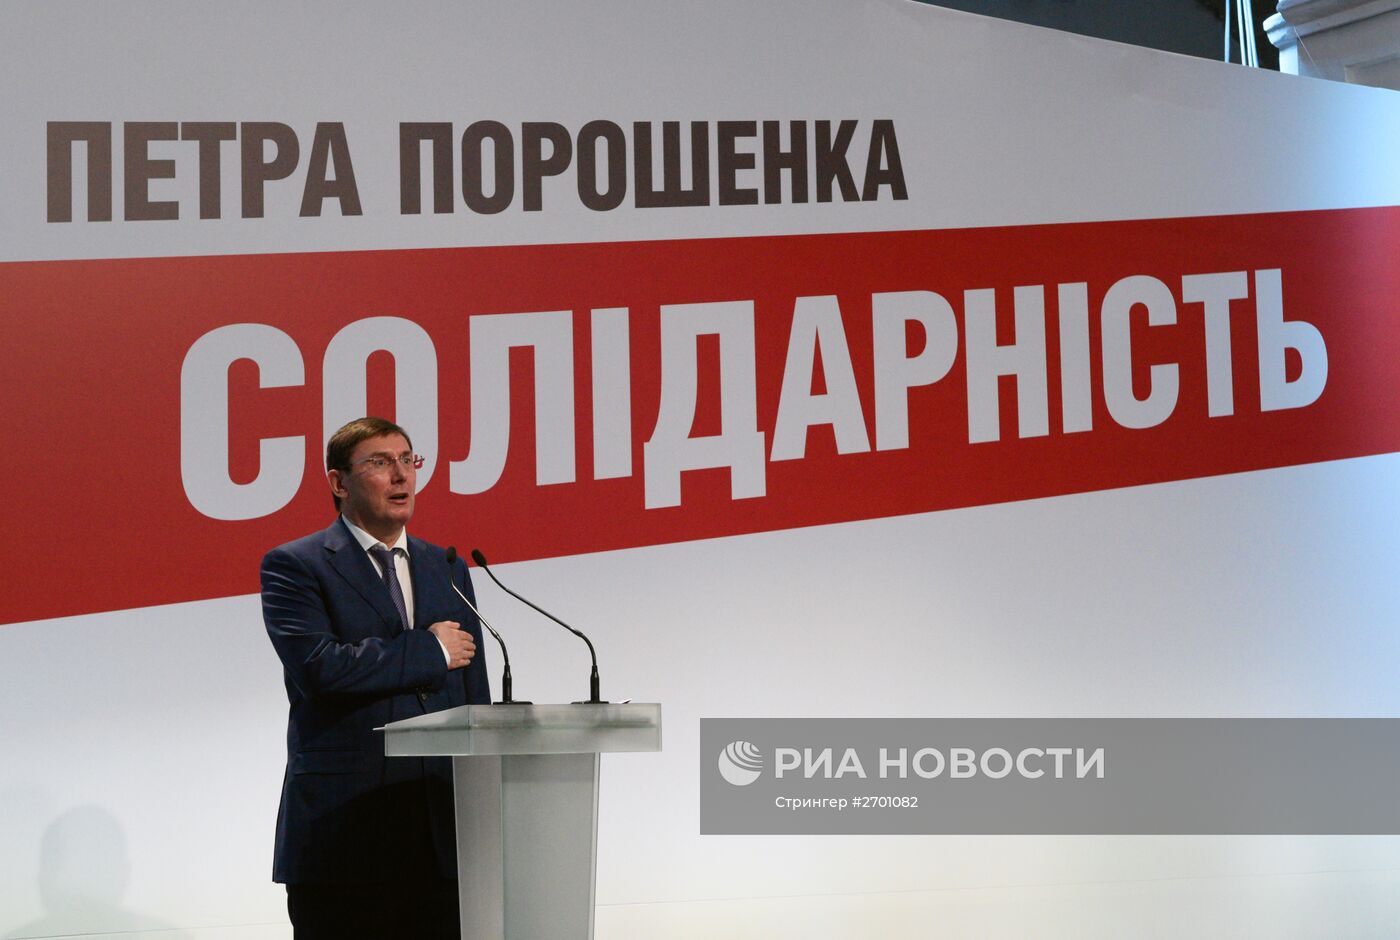 Съезд партии Петра Порошенко "Солидарность"